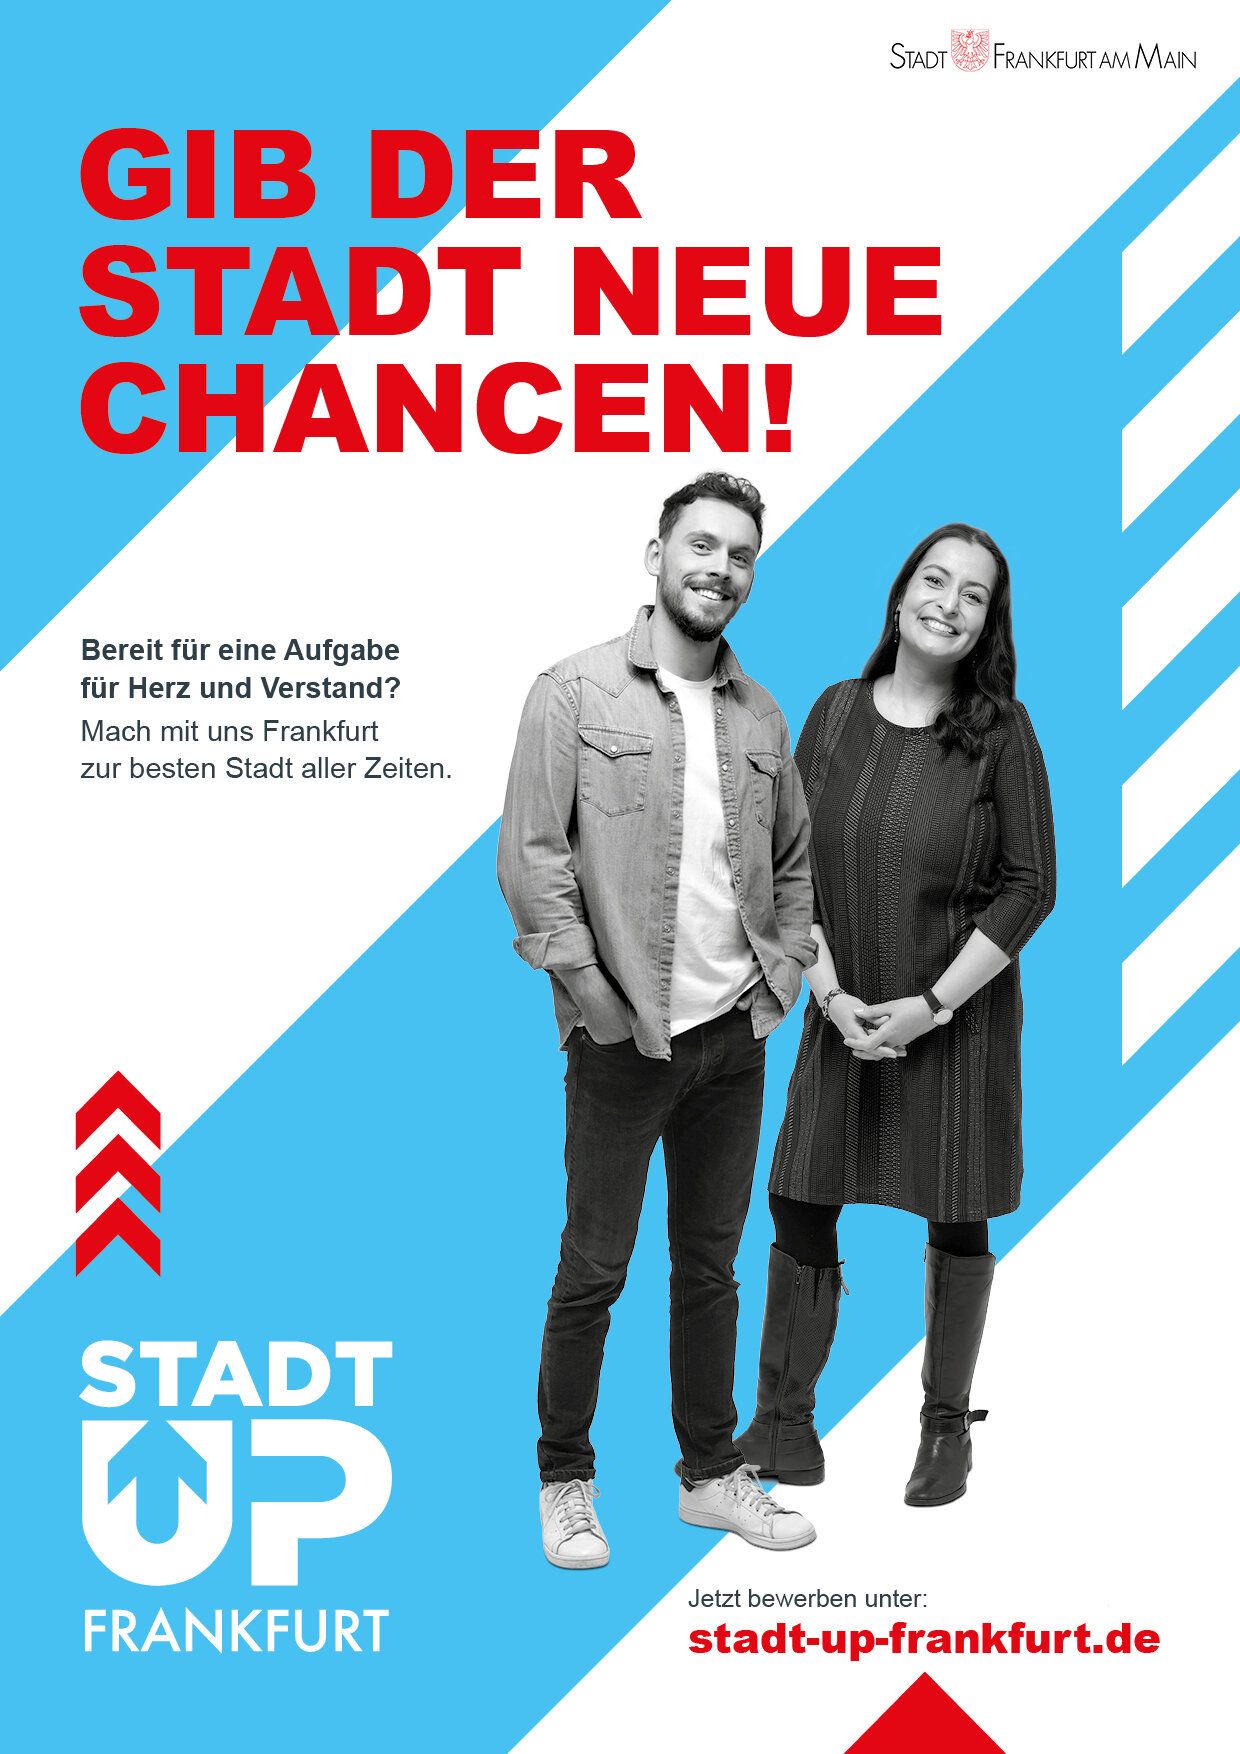 Plakat mit dem Text "Gib der Stadt neue Chancen!" und zwei Mitarbeitern der Stadt Frankfurt.